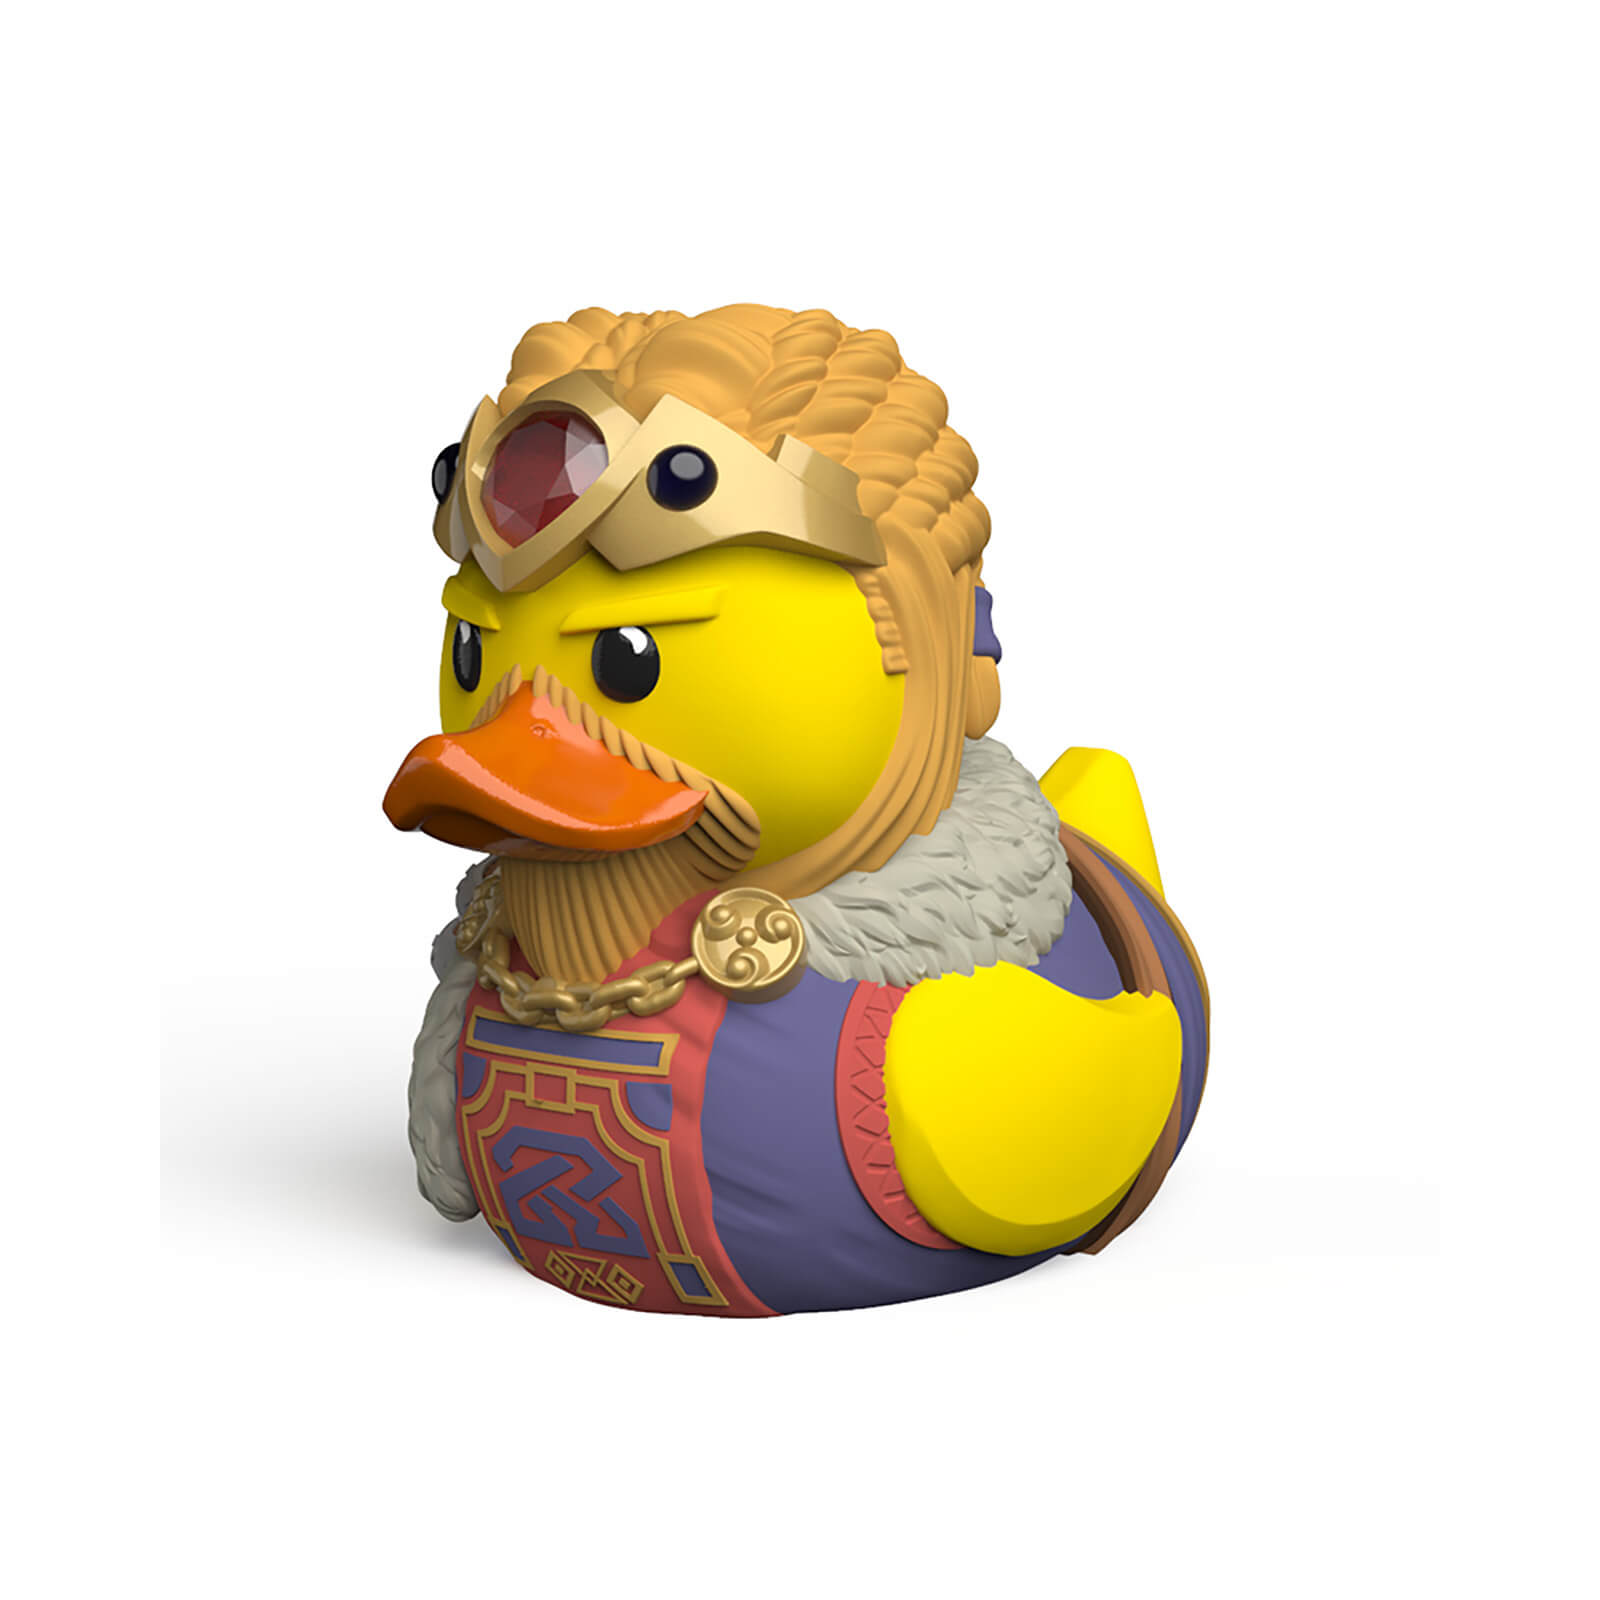 Skyrim Tubbz Collectible Duck - Jarl Balgruuf the Greater